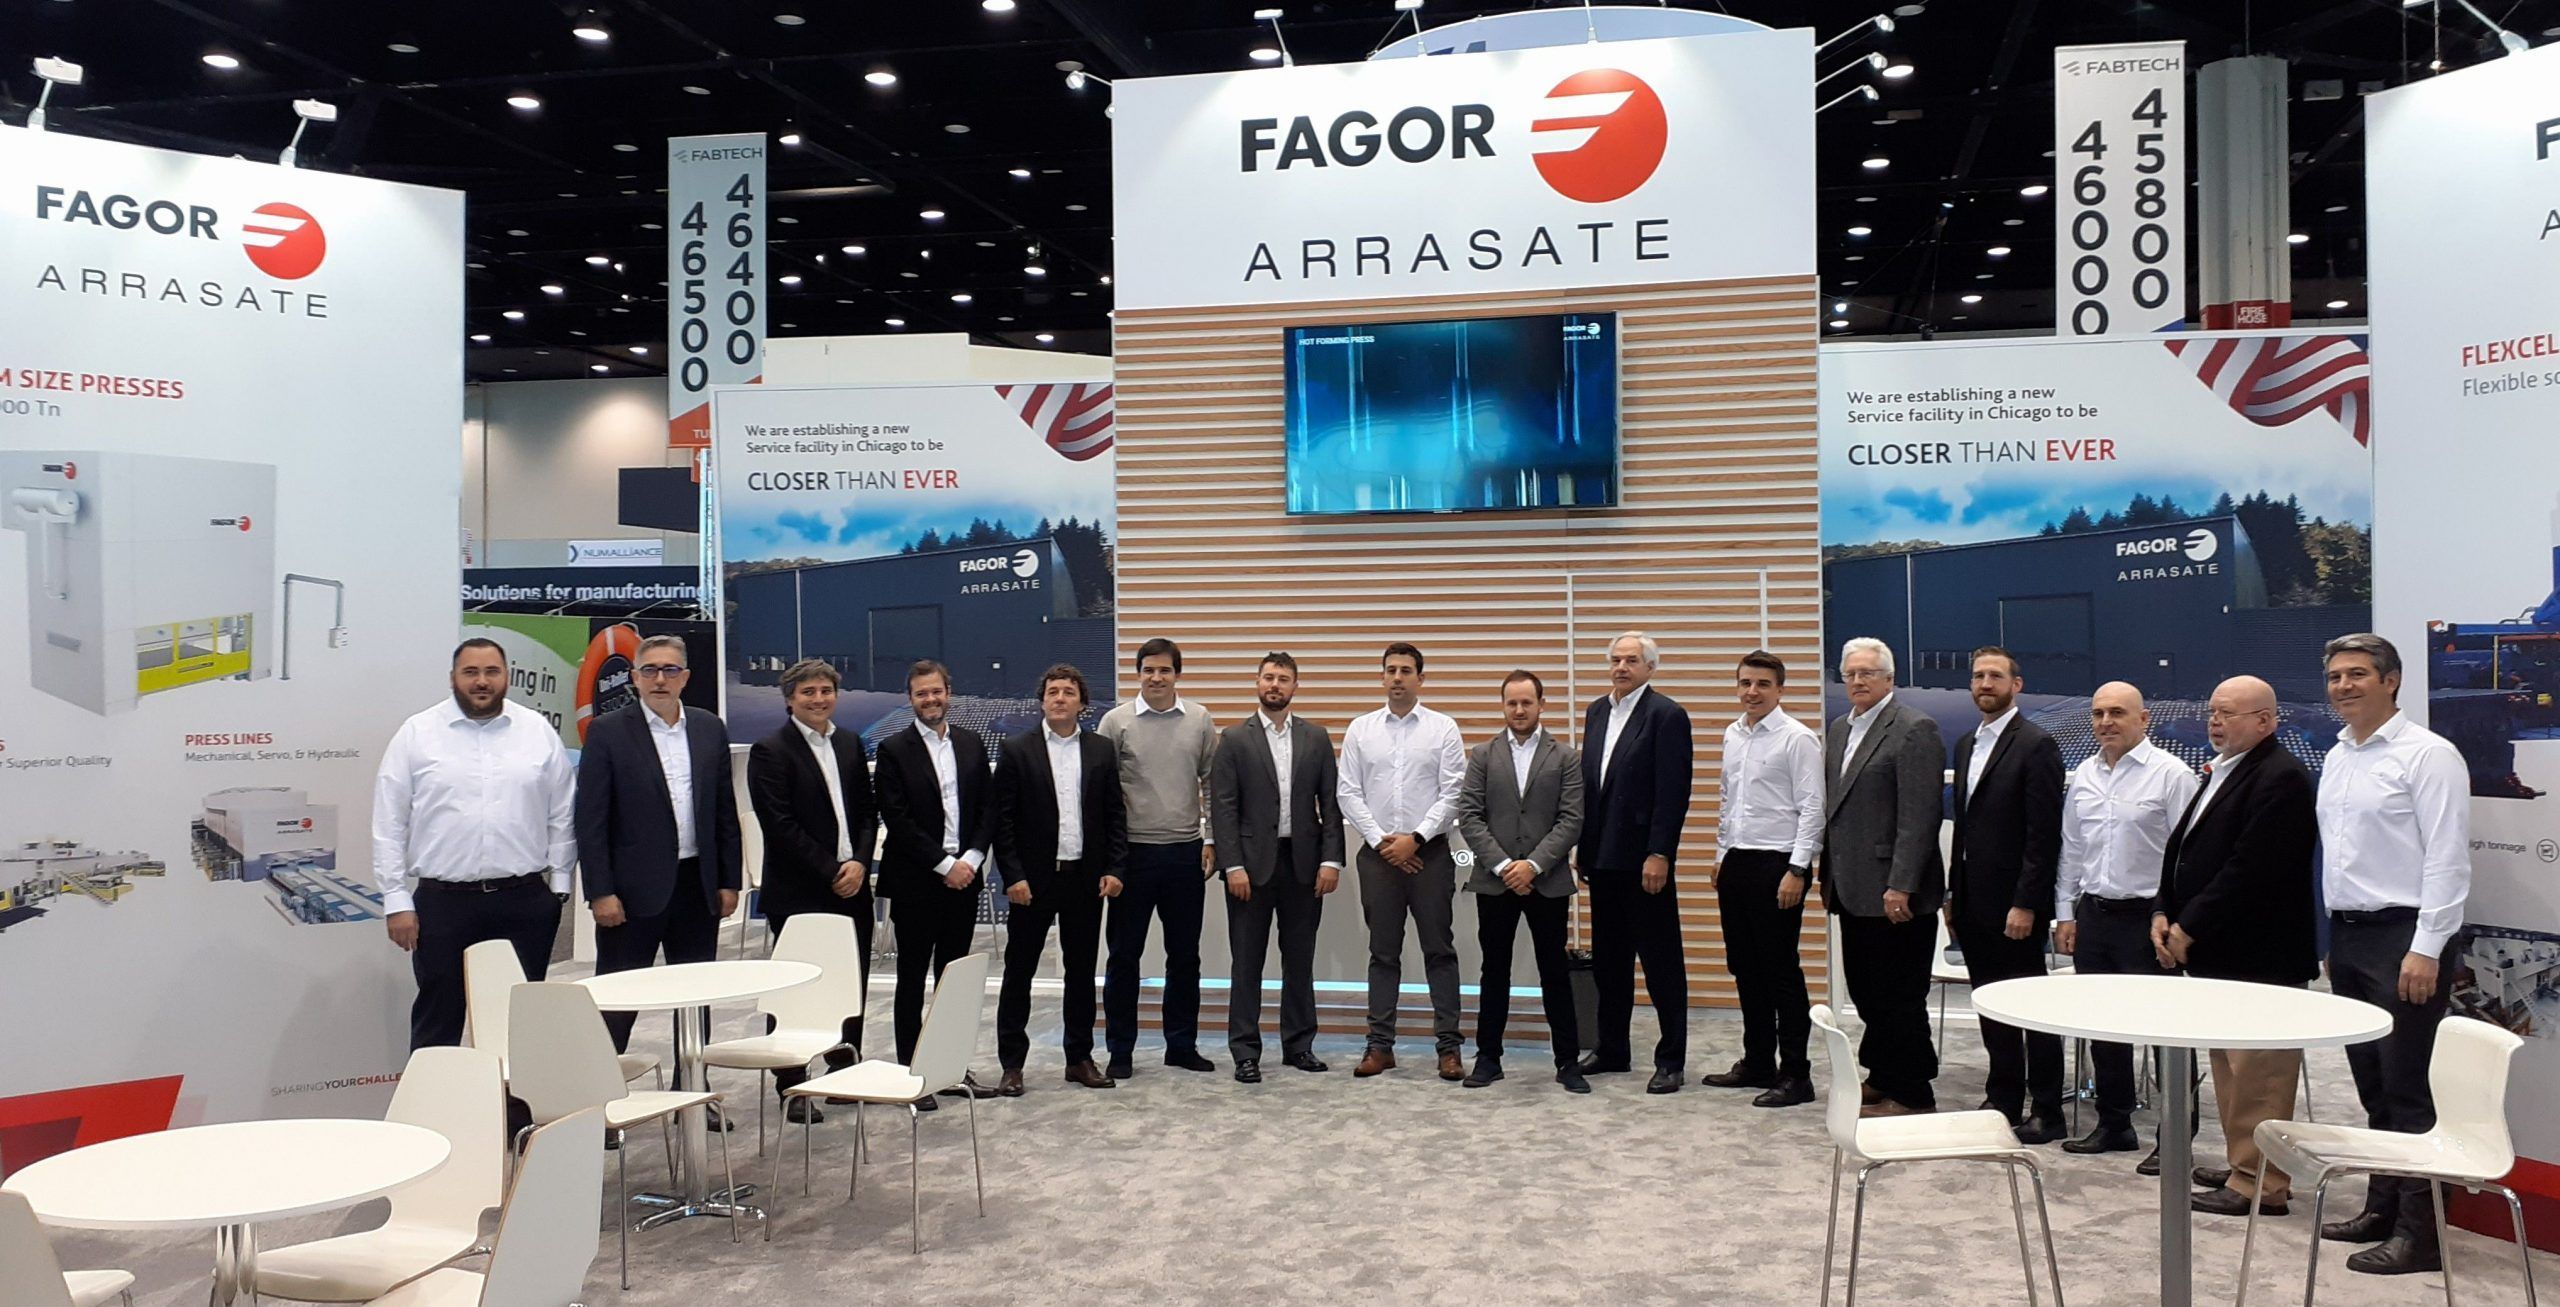 Fagor Arrasate event: Fagor Arrasate anuncia la apertura en Chicago de una nueva planta orientada a service